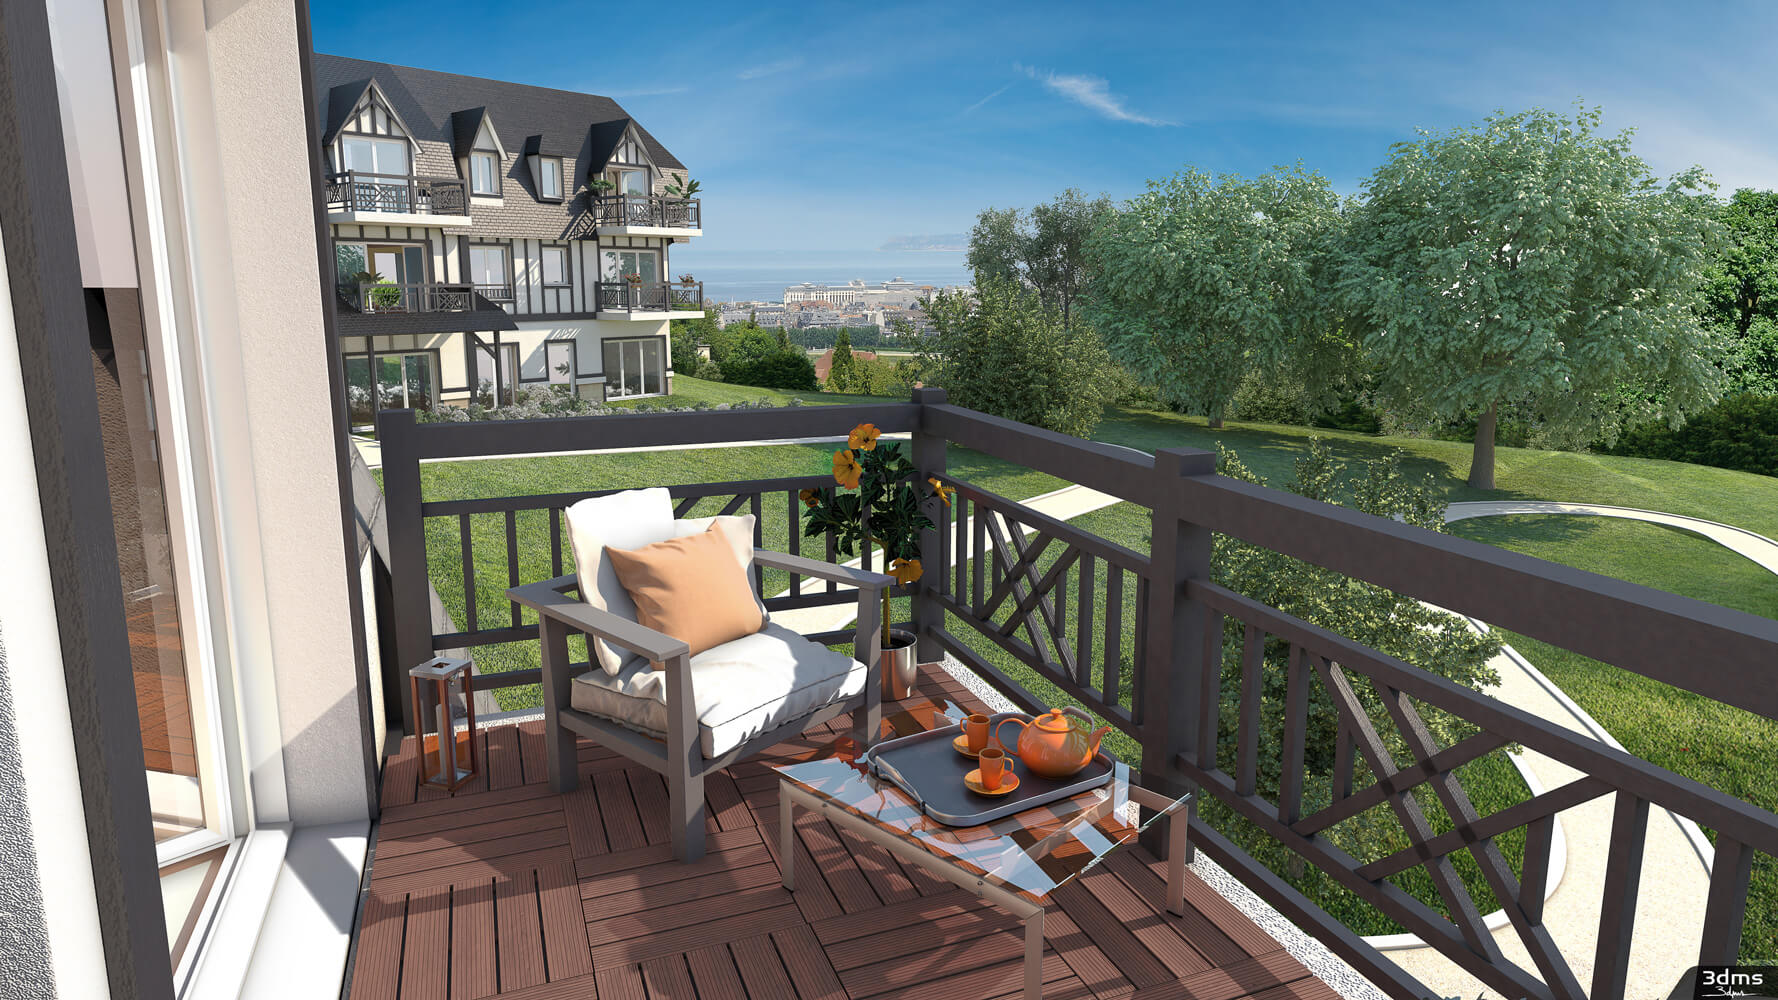 Visuel d'illustration 3D de vue balcon d'un projet immobilier à Deauville